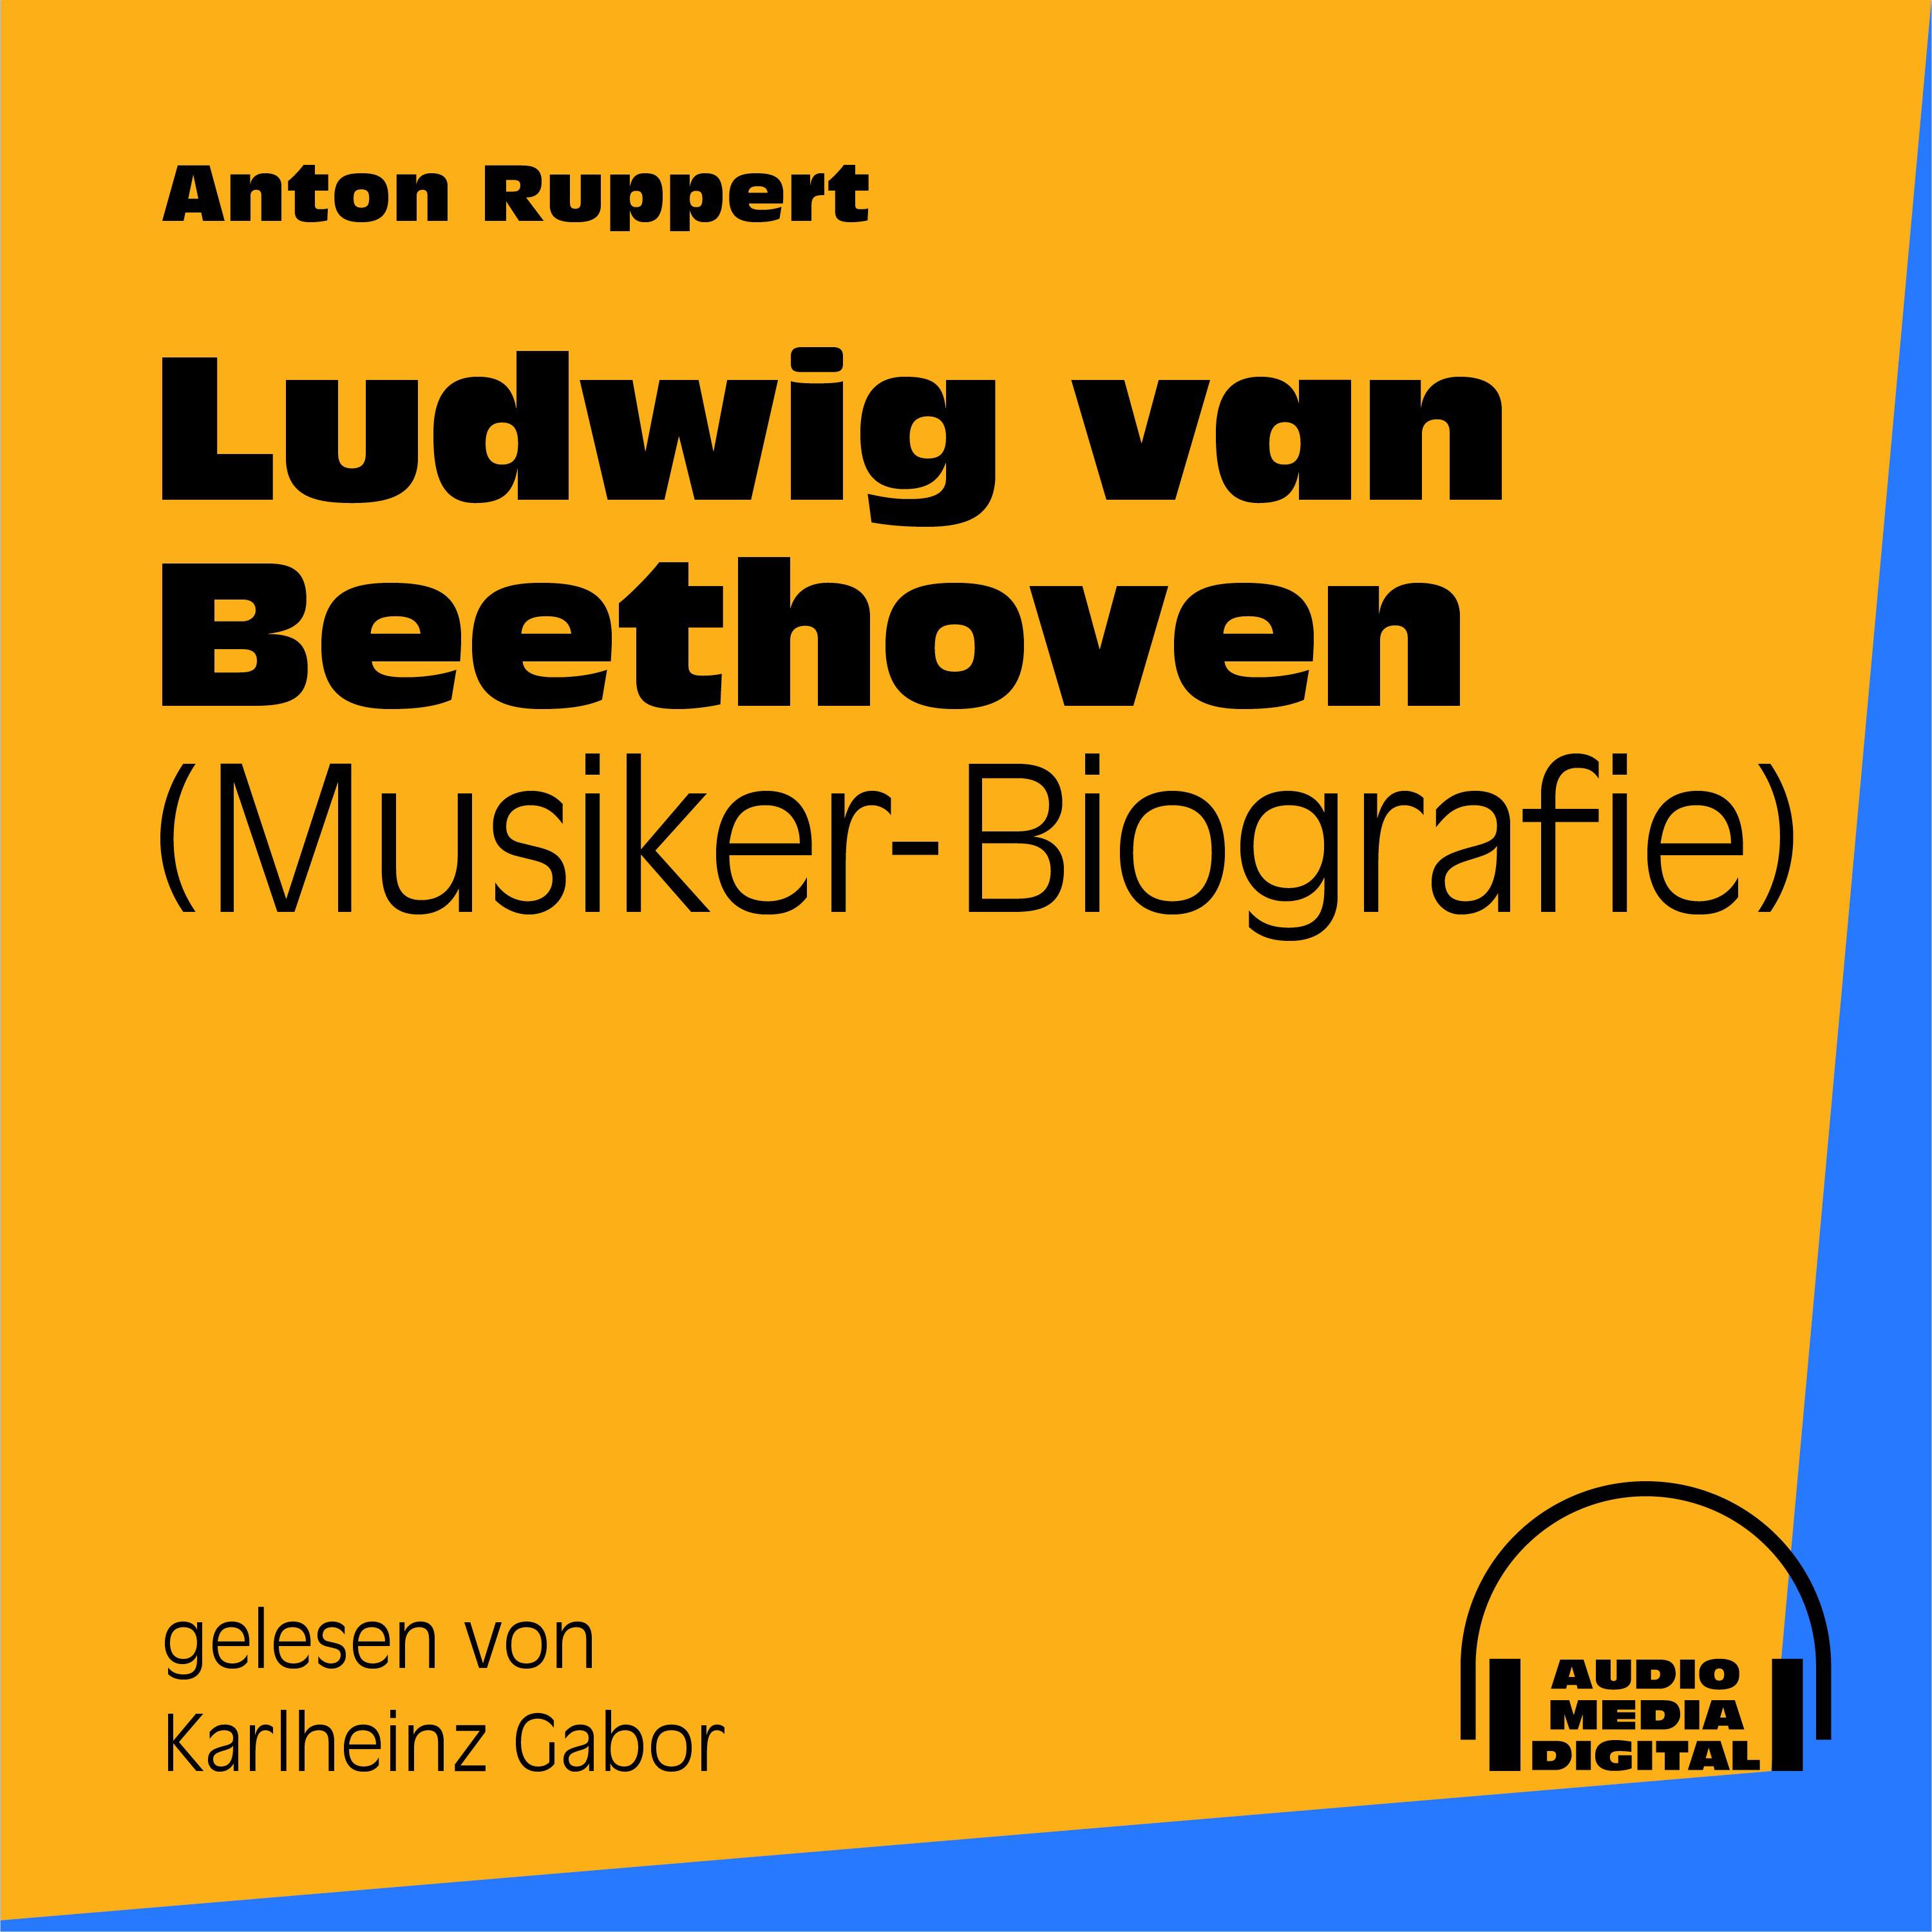 Teil 1: Ludwig van Beethoven